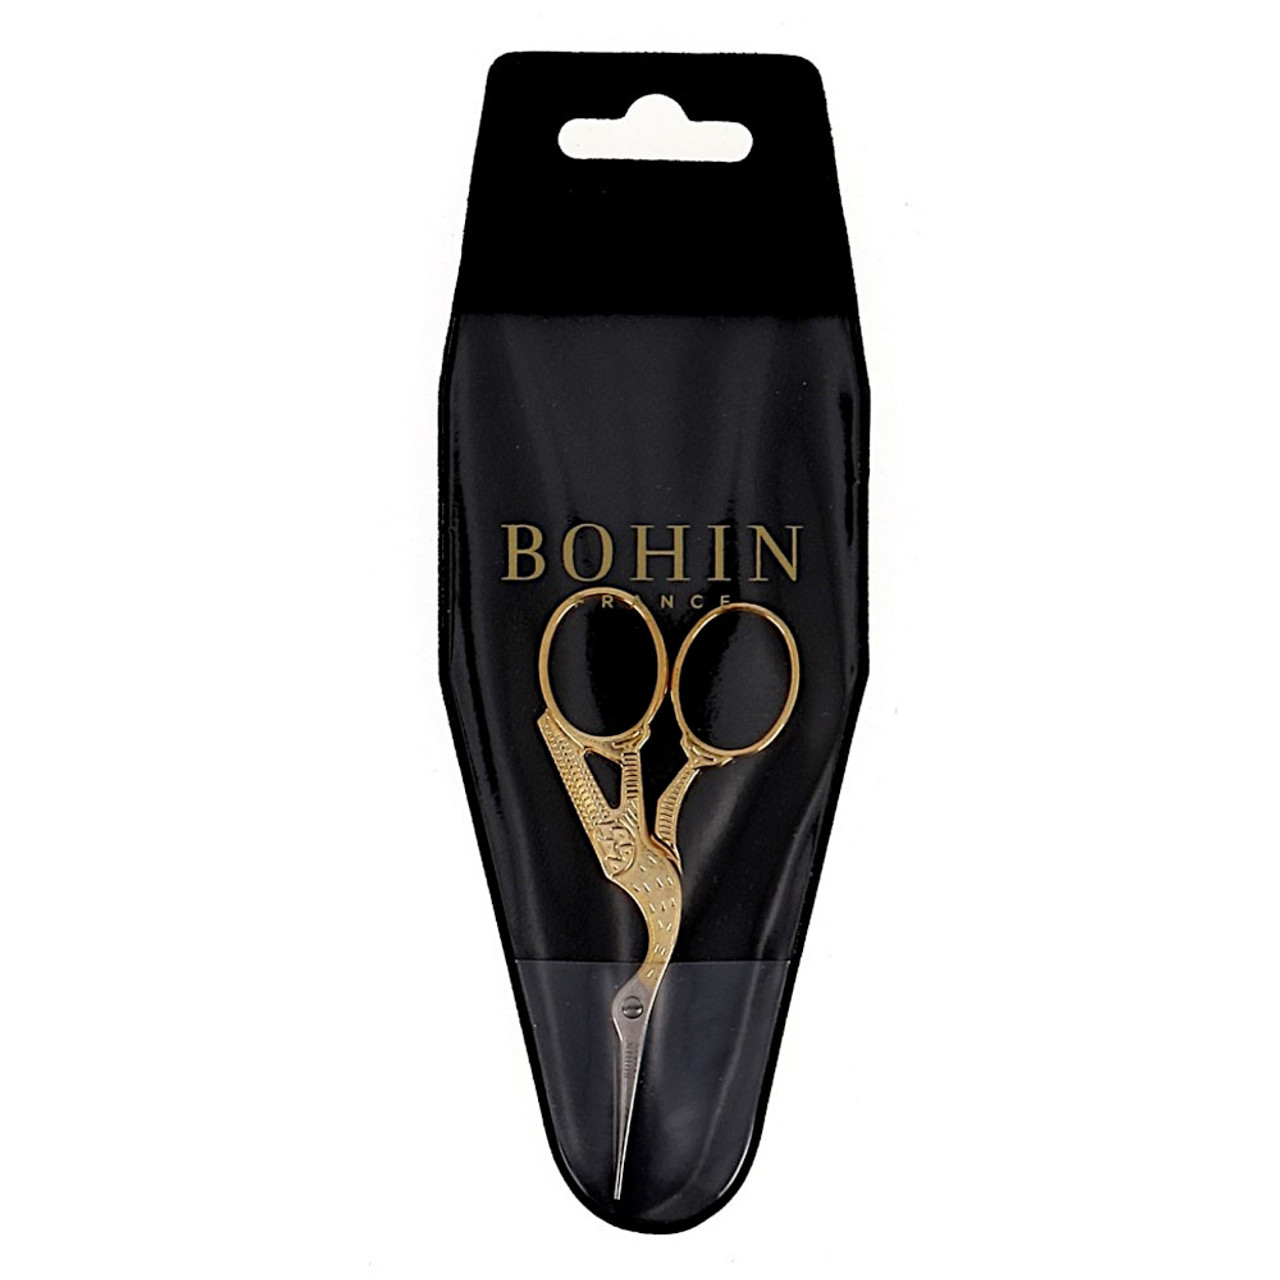 Bohin 3.5 Inch Stork Scissors Gilt